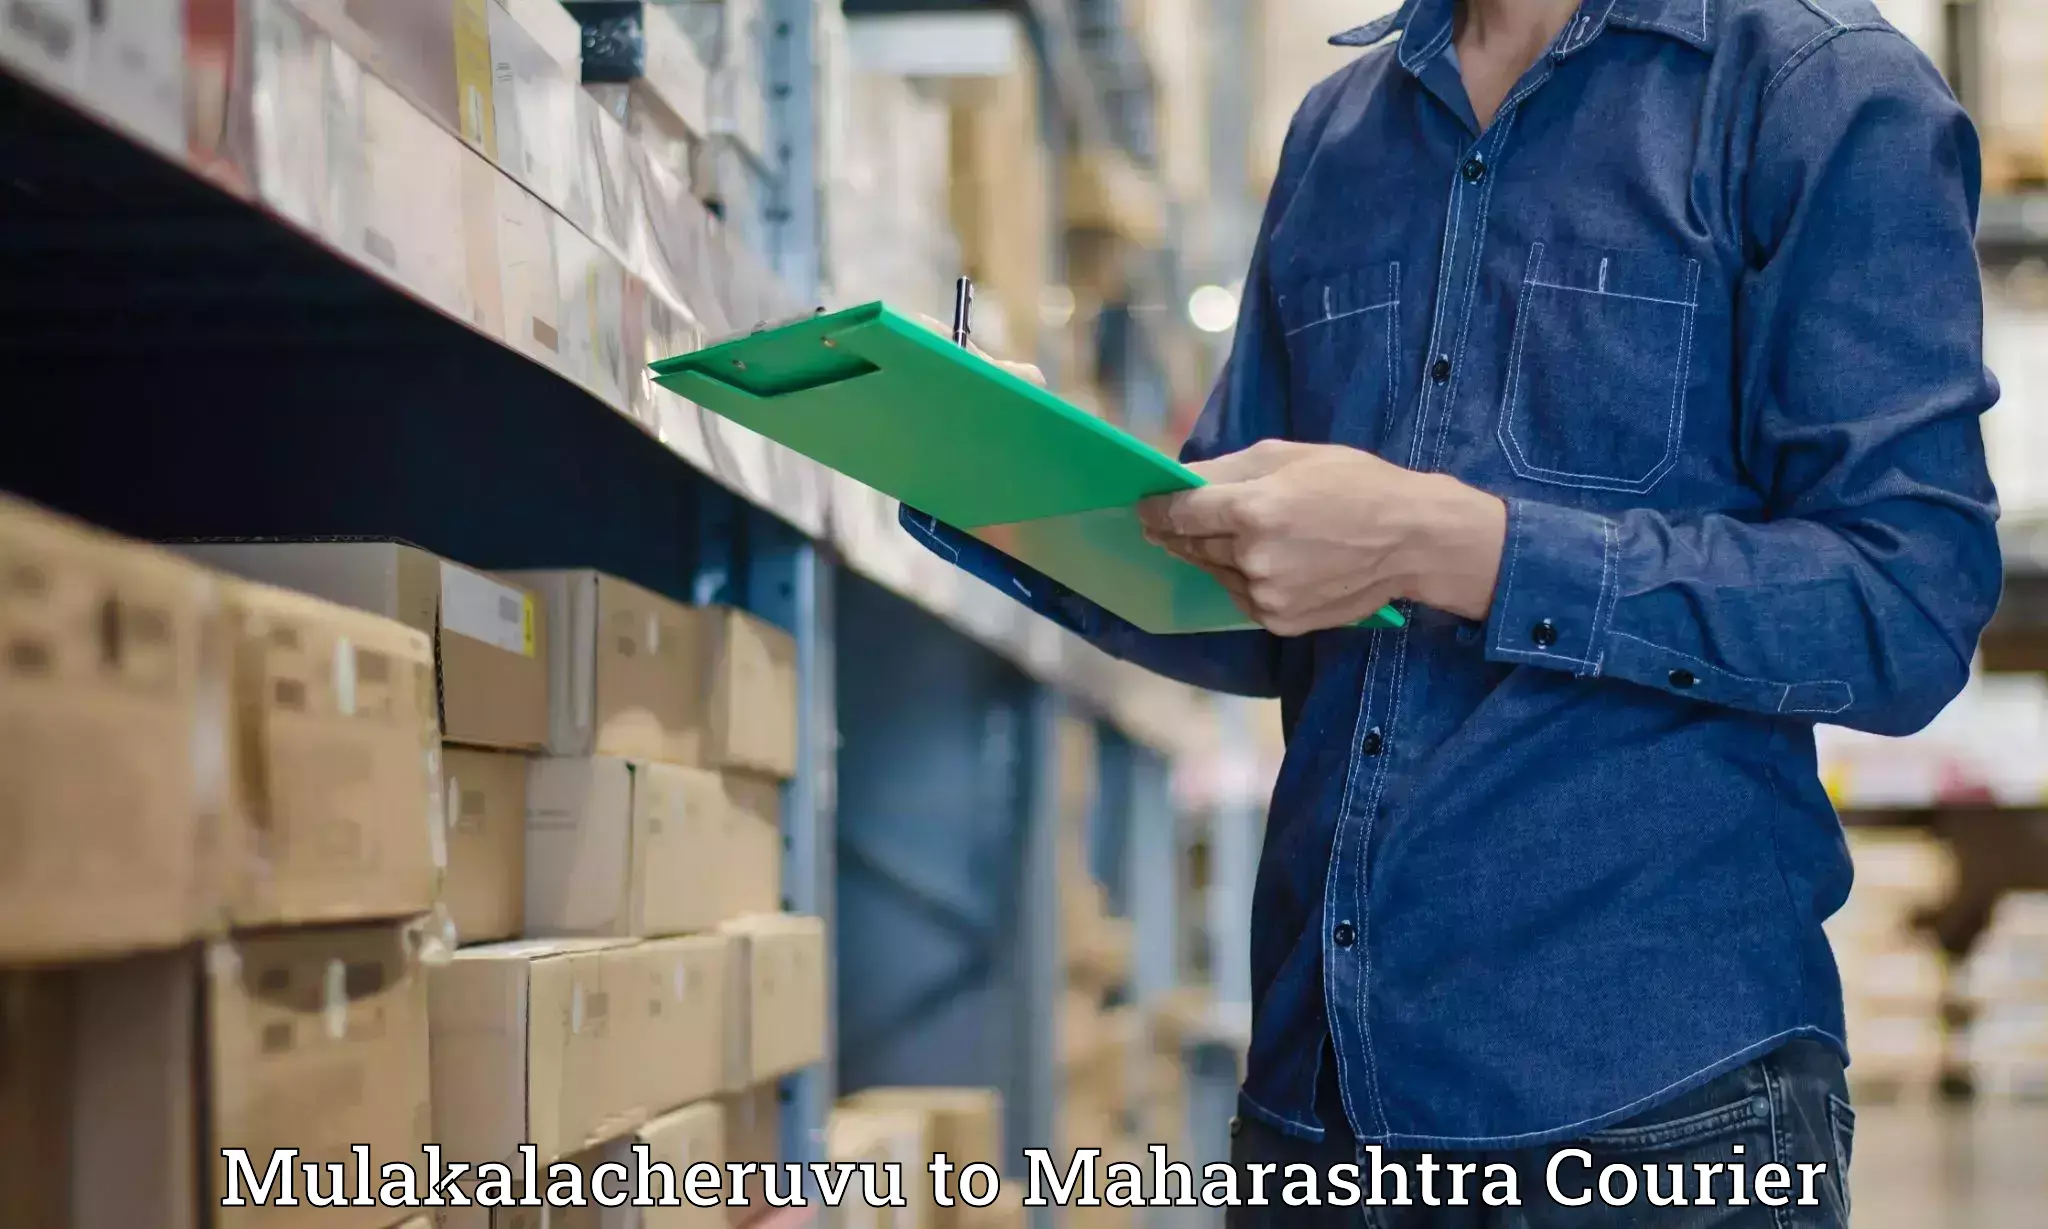 Quick courier services Mulakalacheruvu to Chandrapur